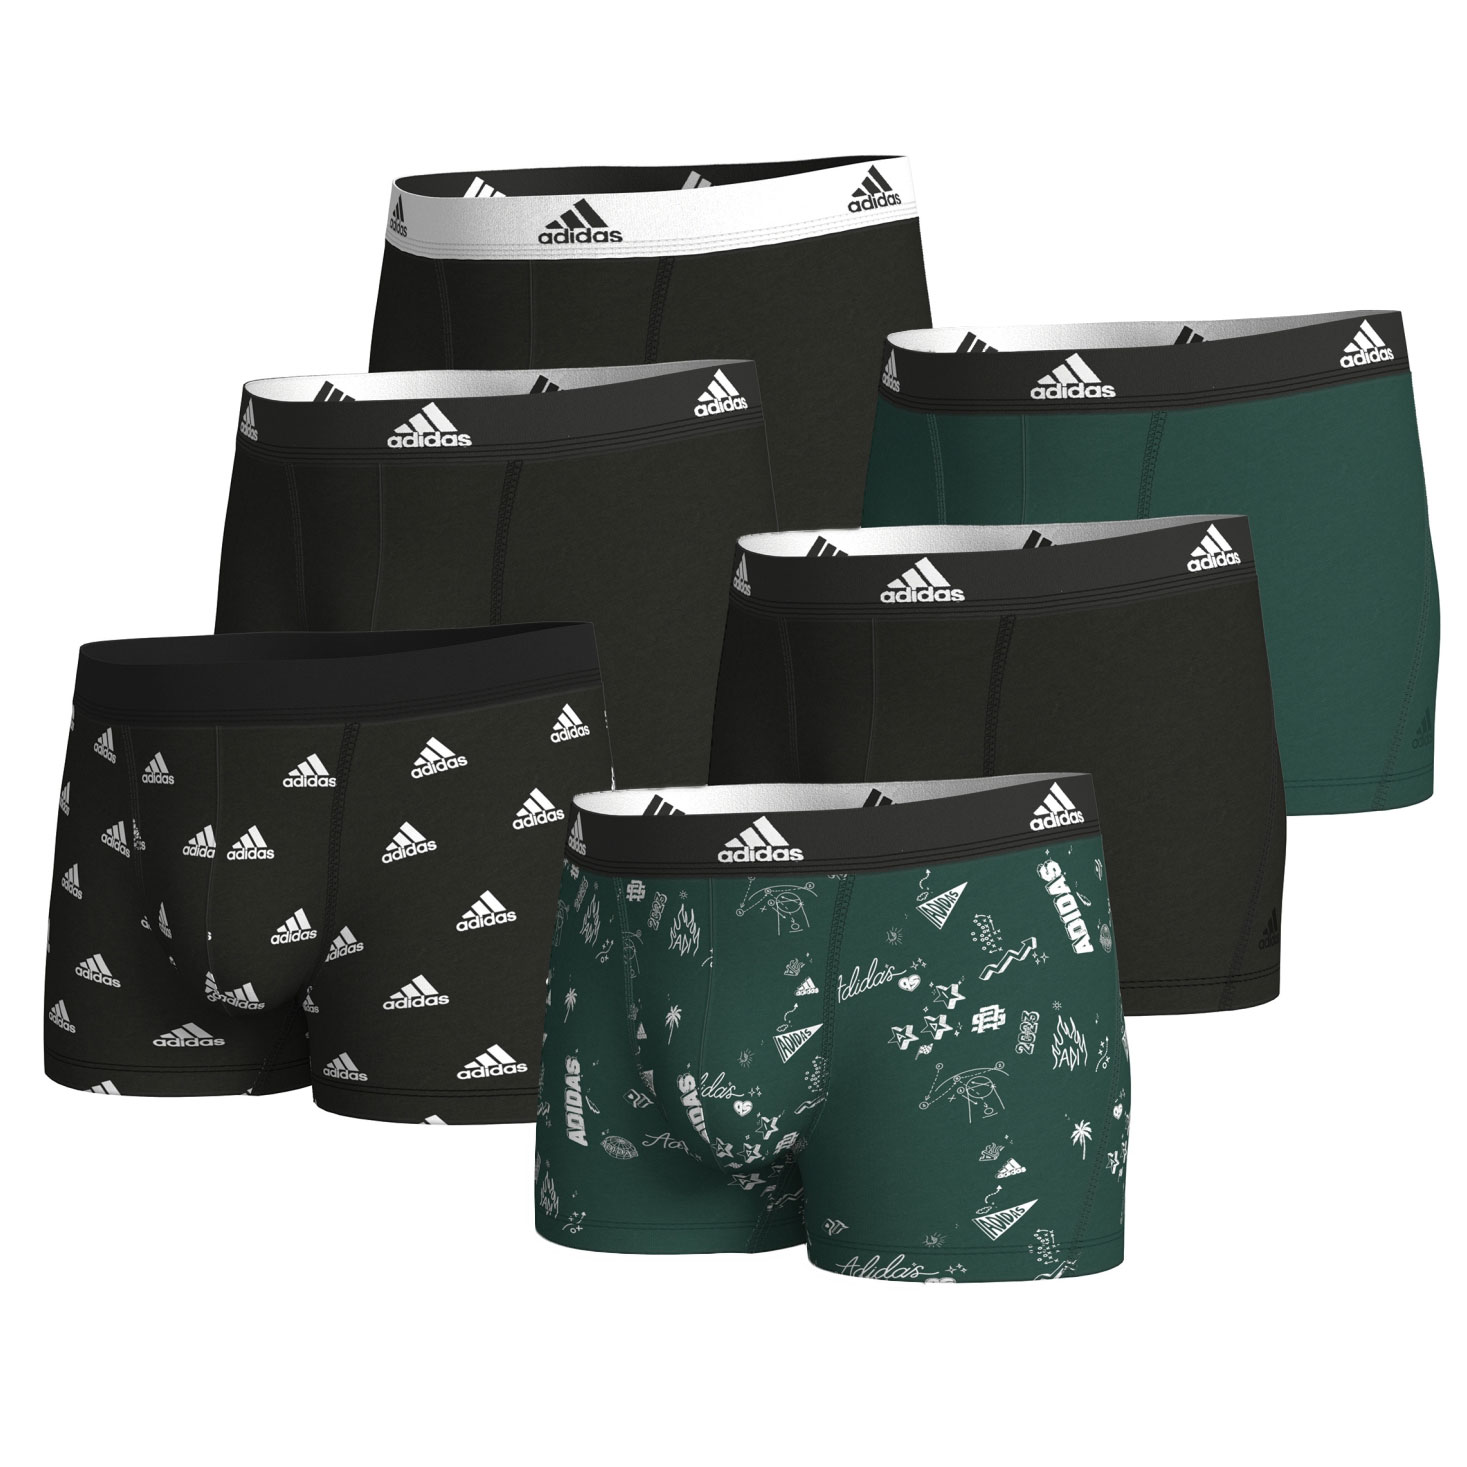 Produktbild von adidas Sports Underwear Active Flex Cotton Boxershorts Herren - 6 Pack - 971-assorted